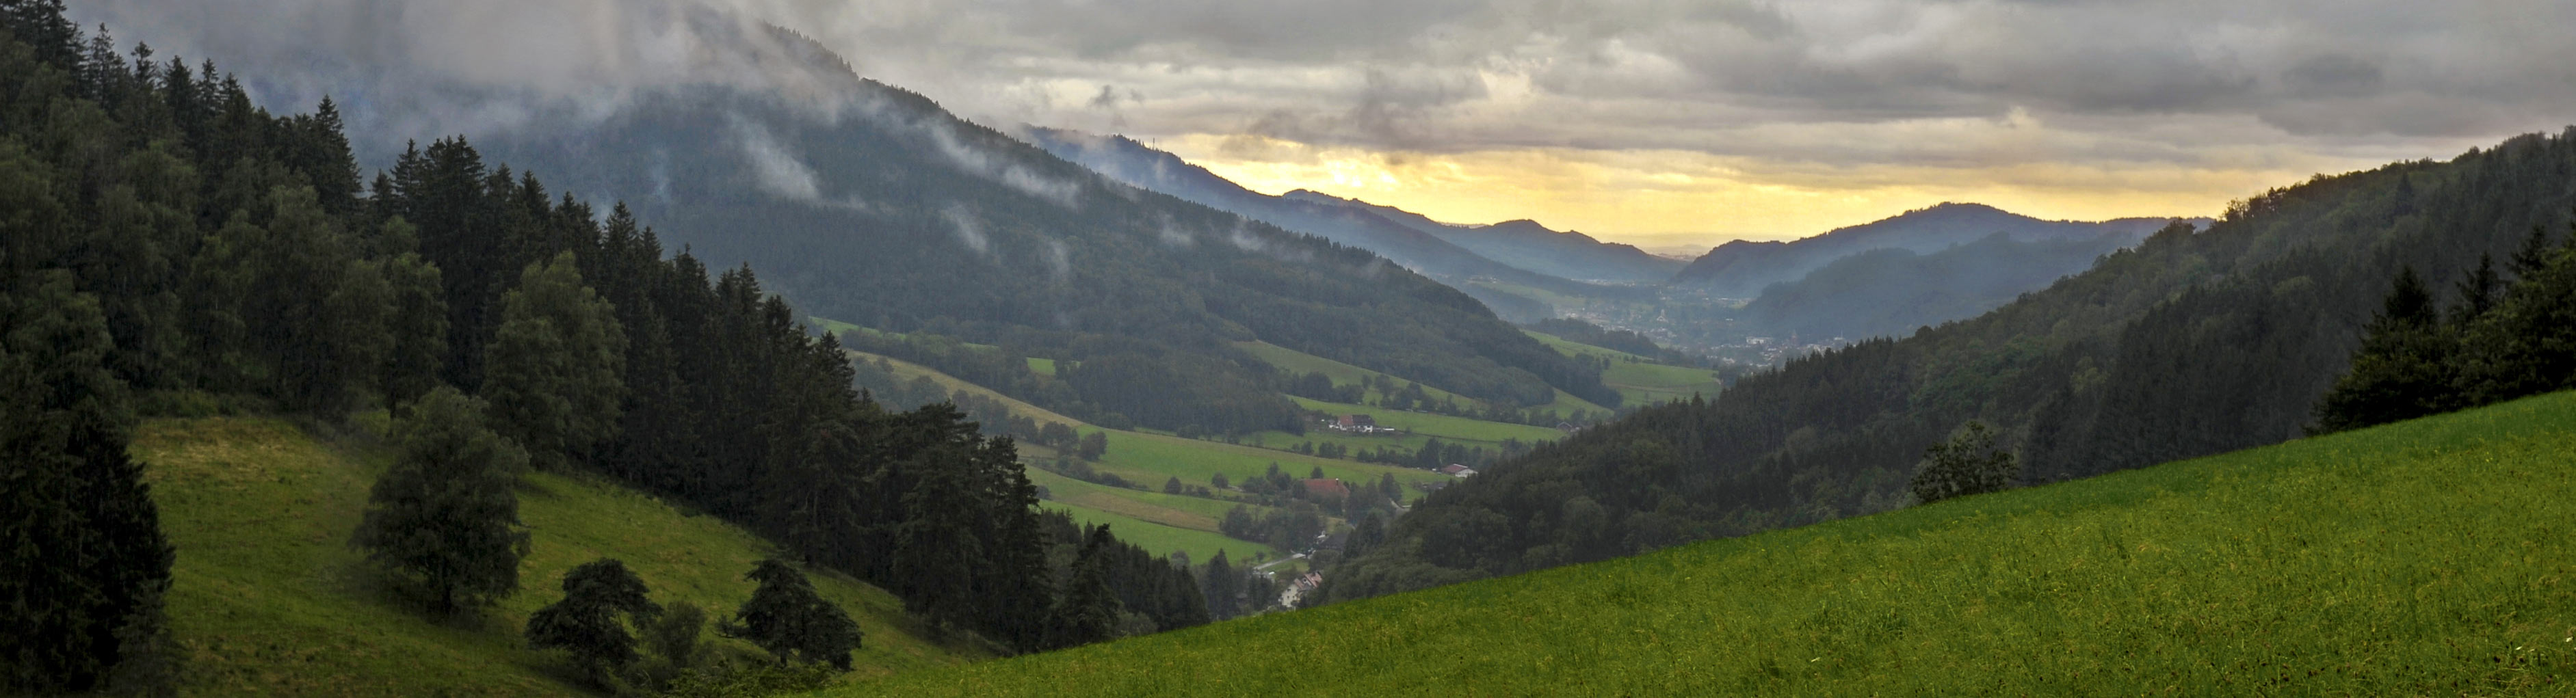 fotografie kommunen staedte tourismus schwarzwald natur